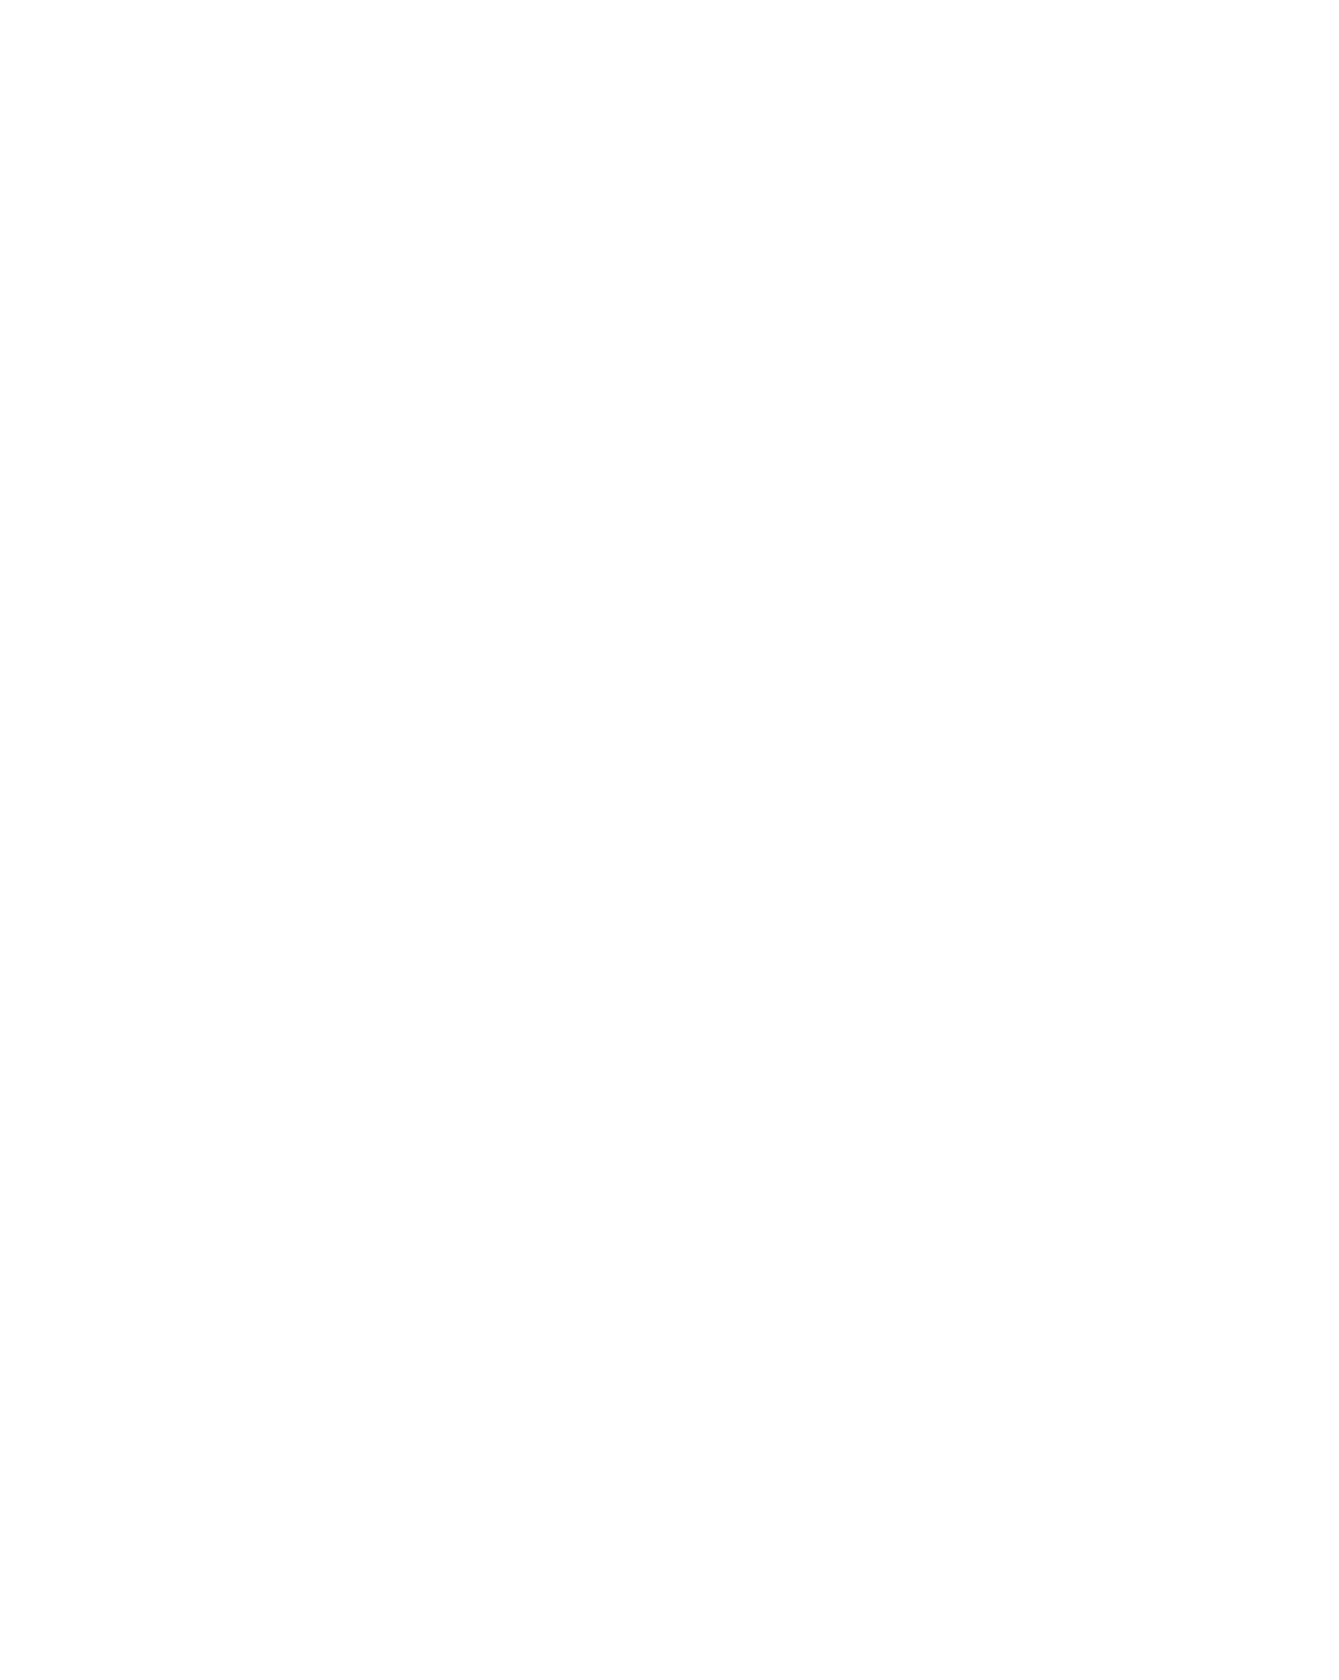 Экспонат Сибирско-уральской научно-промышленной выставки. Каменная горка. 1887 г. Открытка. Частный архив